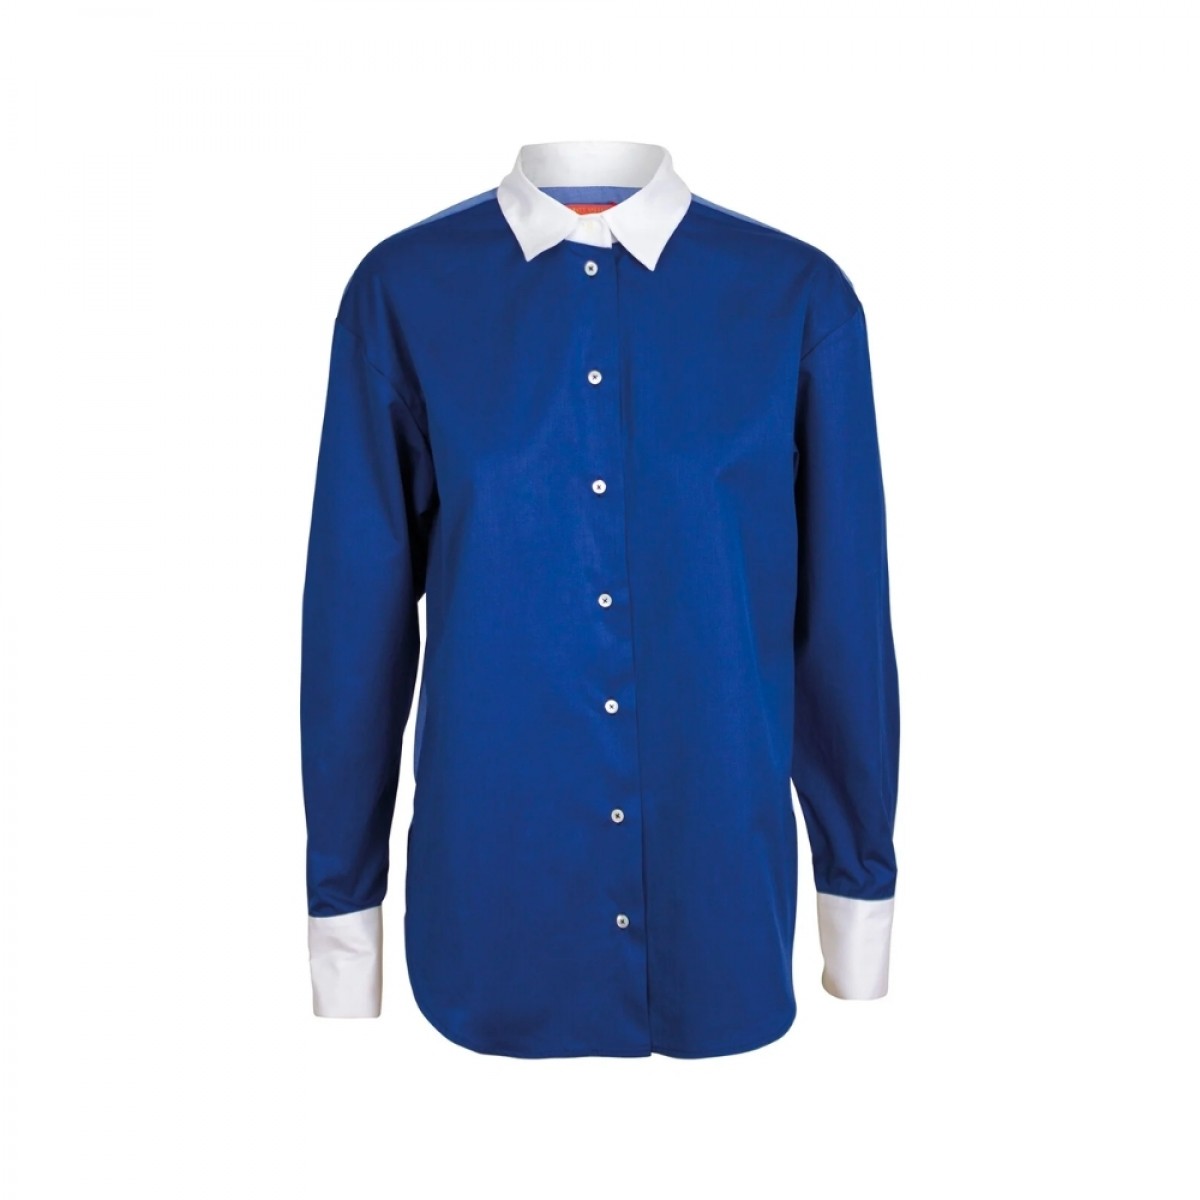 vega trio shirt - blue - front